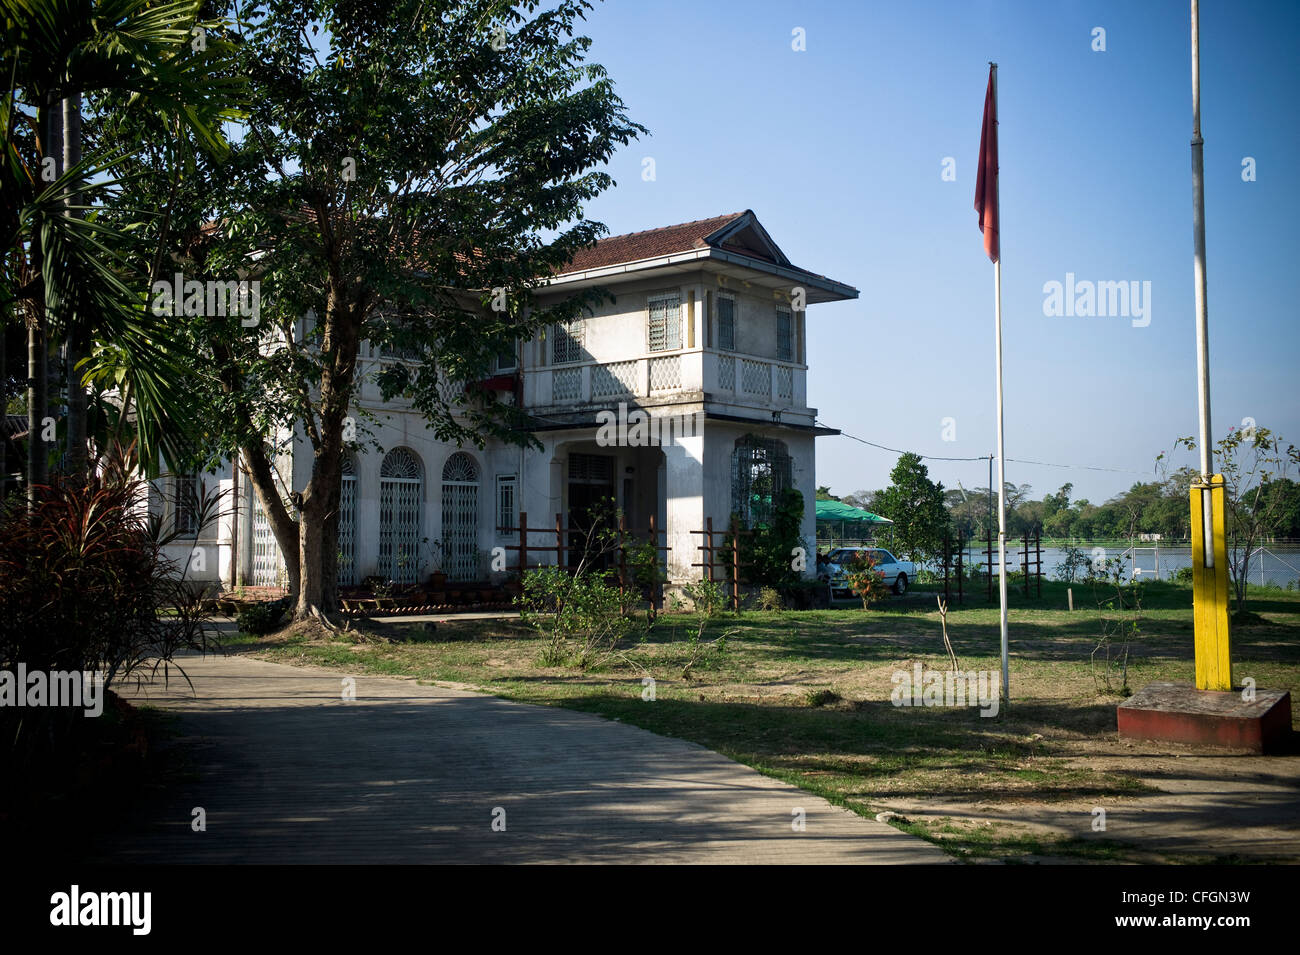 La maison d'Aung San Suu Kyi au 54 Avenue de l'Université de Yangon Myanmar, Birmanie, où elle a passé plus de 15 ans en résidence surveillée alors que le pays était sous la domination d'une dictature militaire Banque D'Images